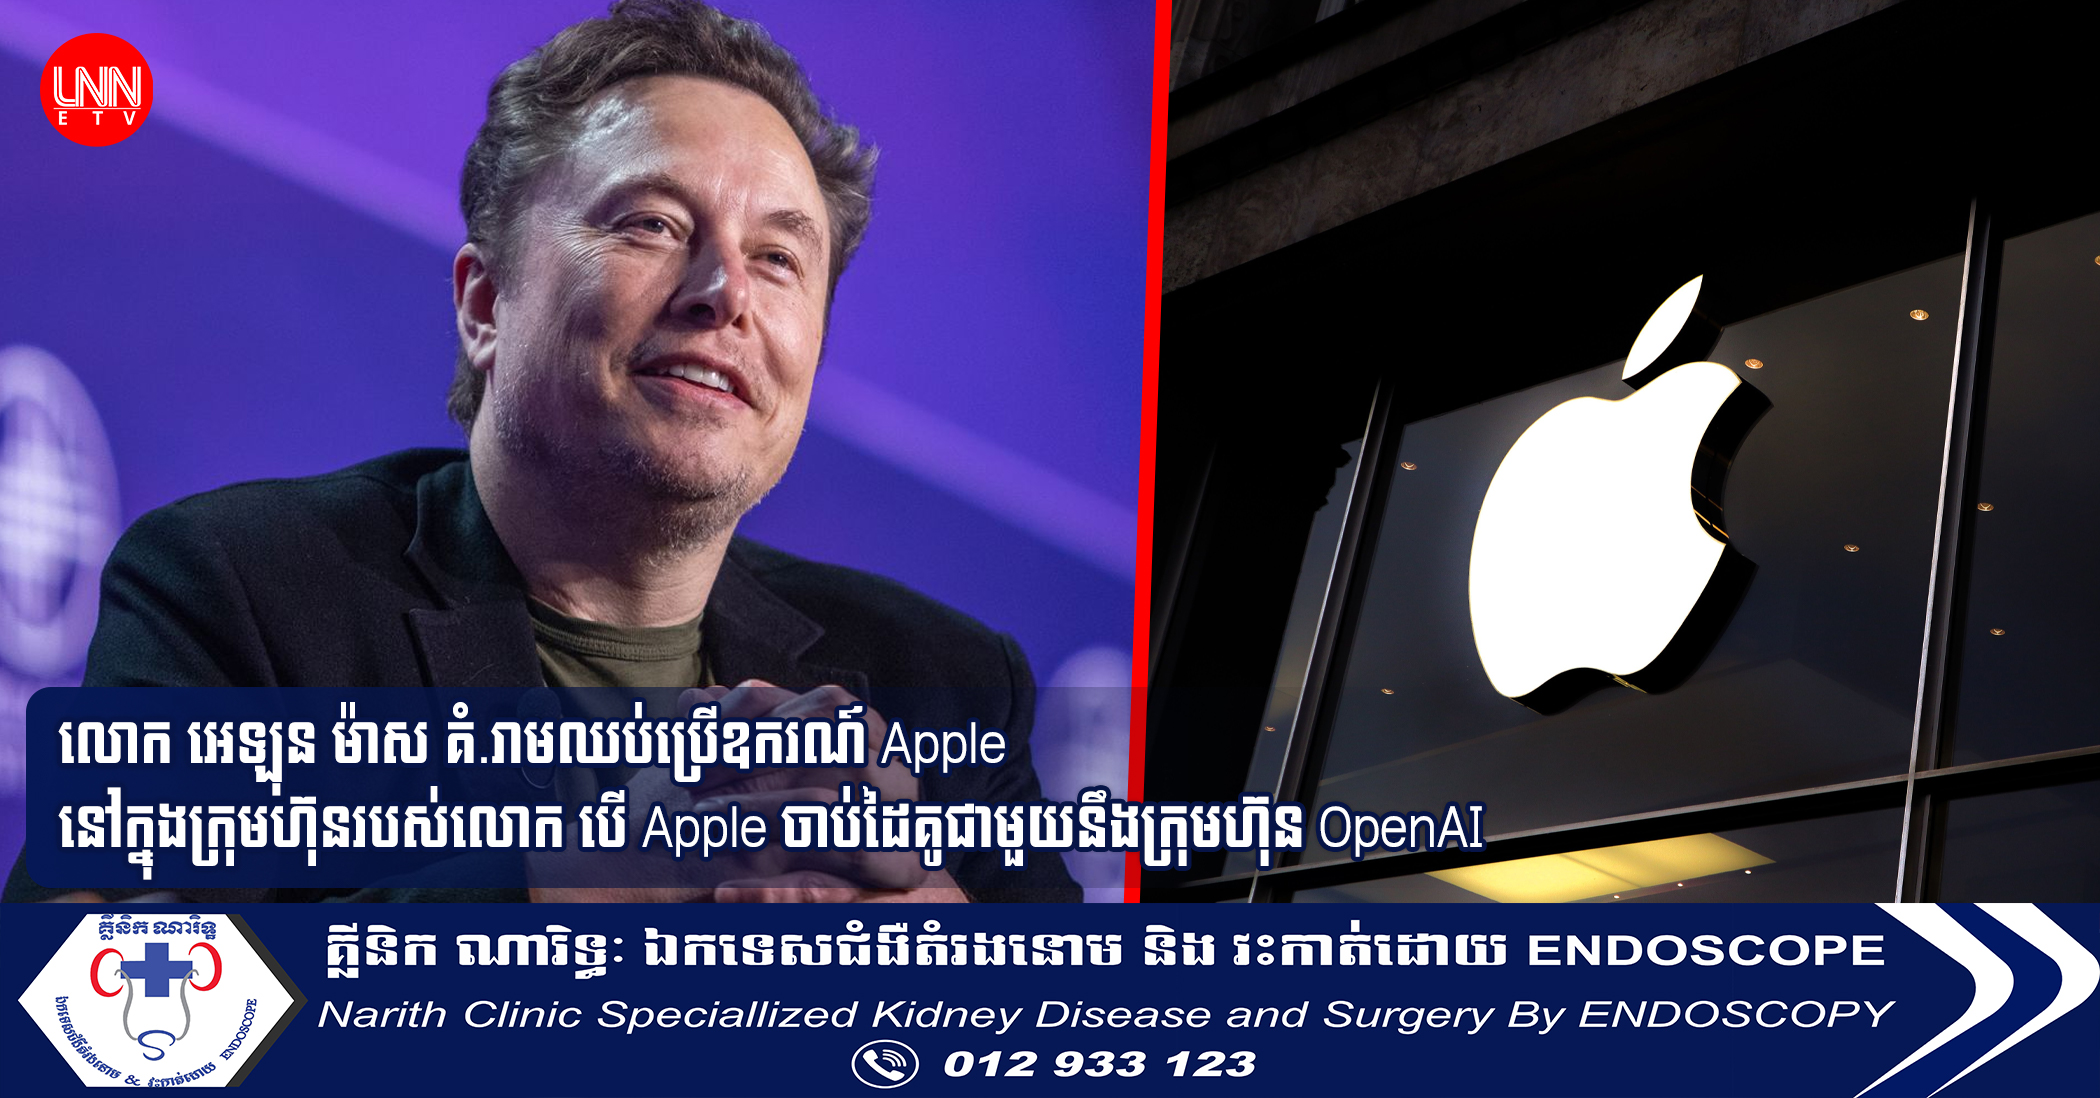 លោក អេឡុន ម៉ាស គំ.រាមឈប់ប្រើឧករណ៍ Apple នៅក្នុងក្រុមហ៊ុនរបស់លោក បើ Apple ចាប់ដៃគូជាមួយនឹងក្រុមហ៊ុន OpenAI